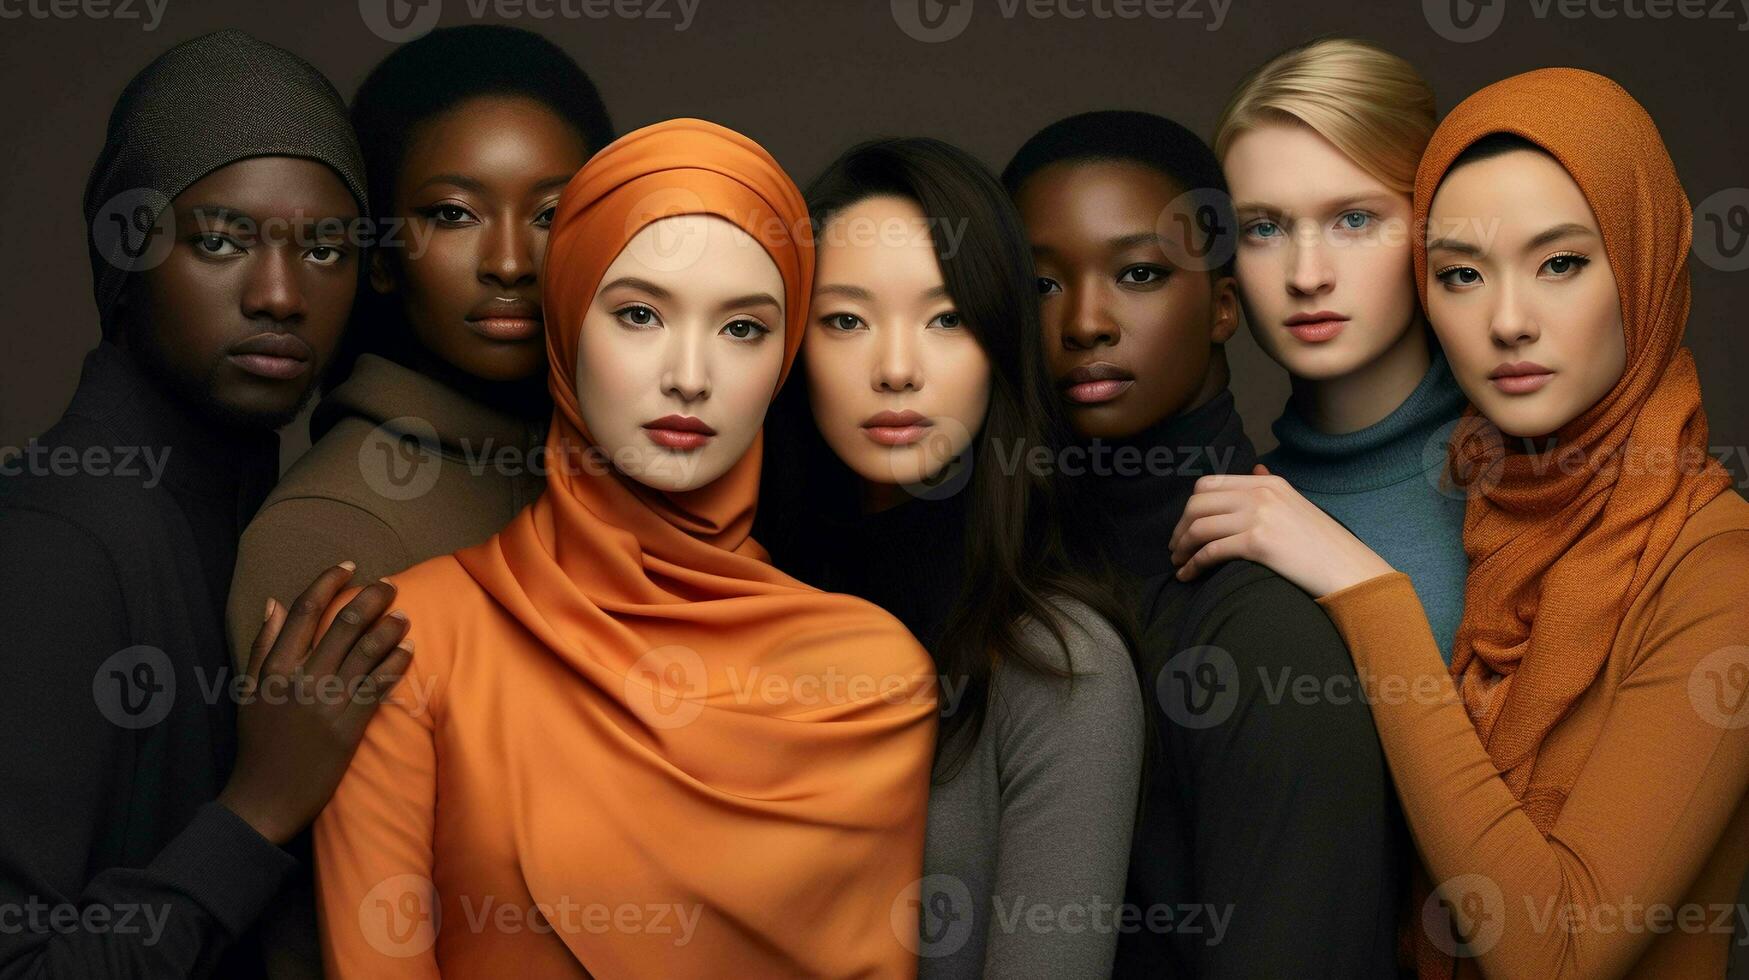 omarmen verscheidenheid en gelijkheid een portret van inclusief harmonie, verenigen mensen van allemaal achtergronden foto